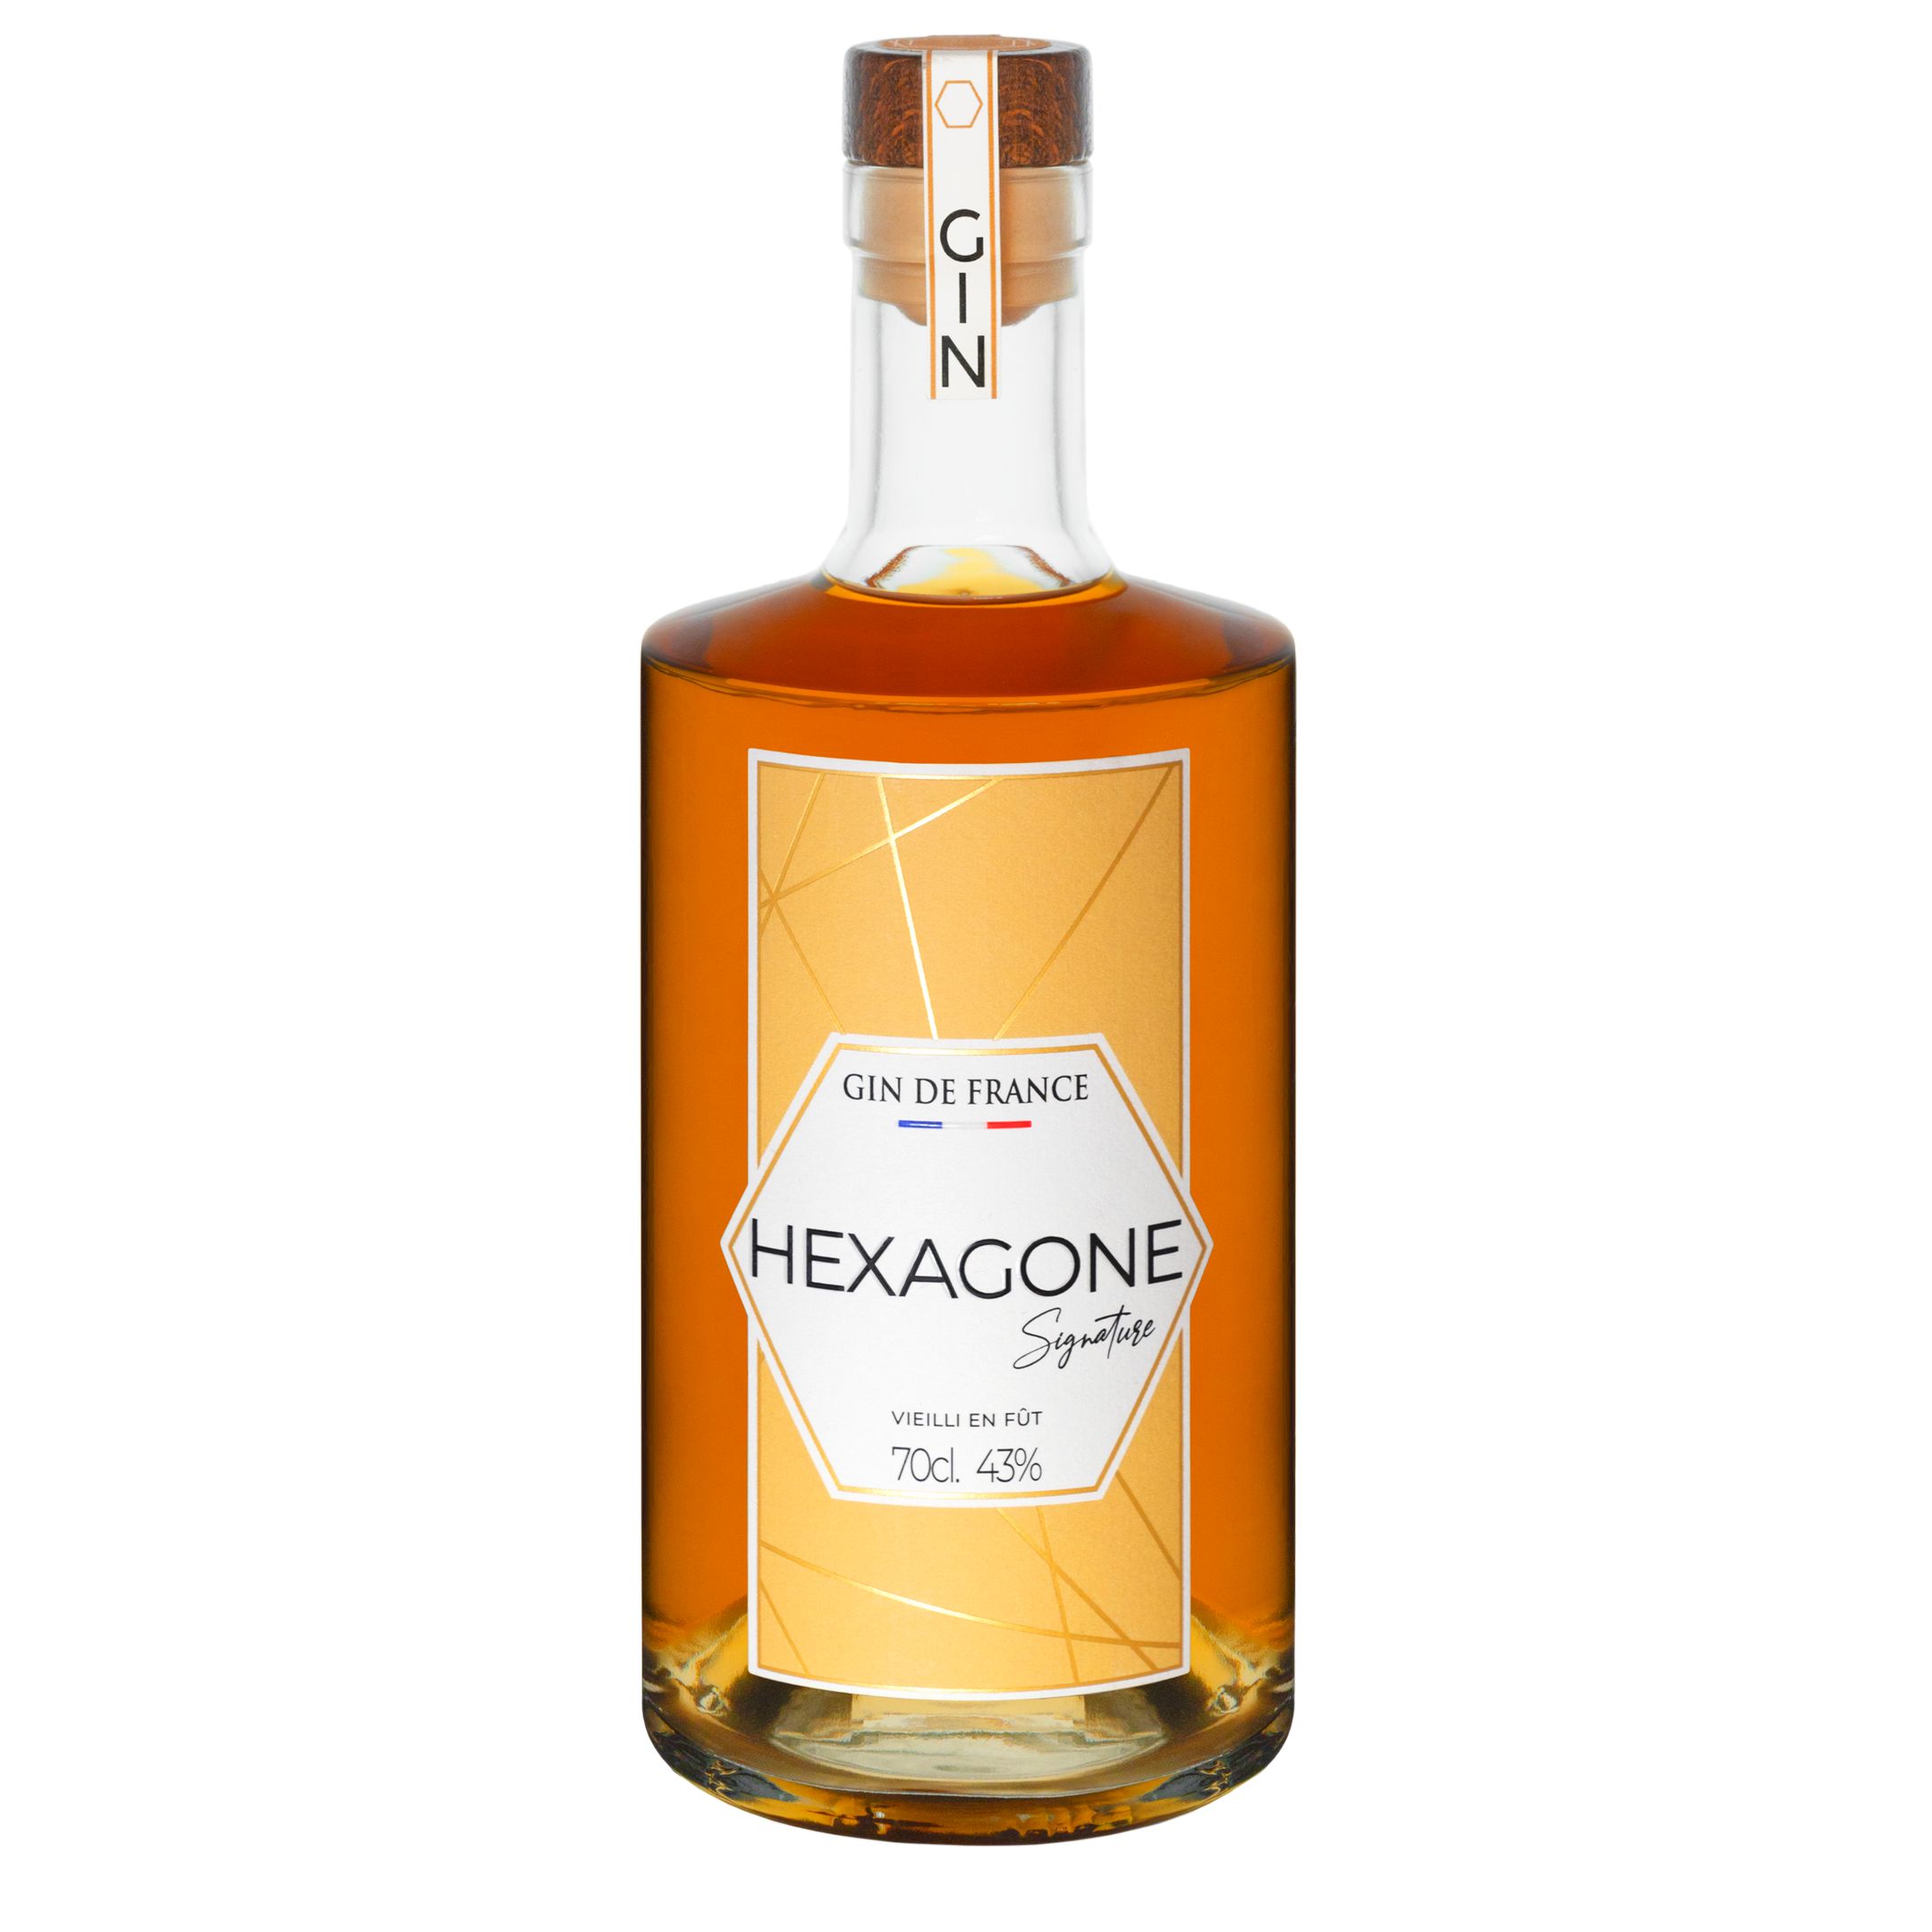 Gin Hexagone Signature Vieilli en Fut